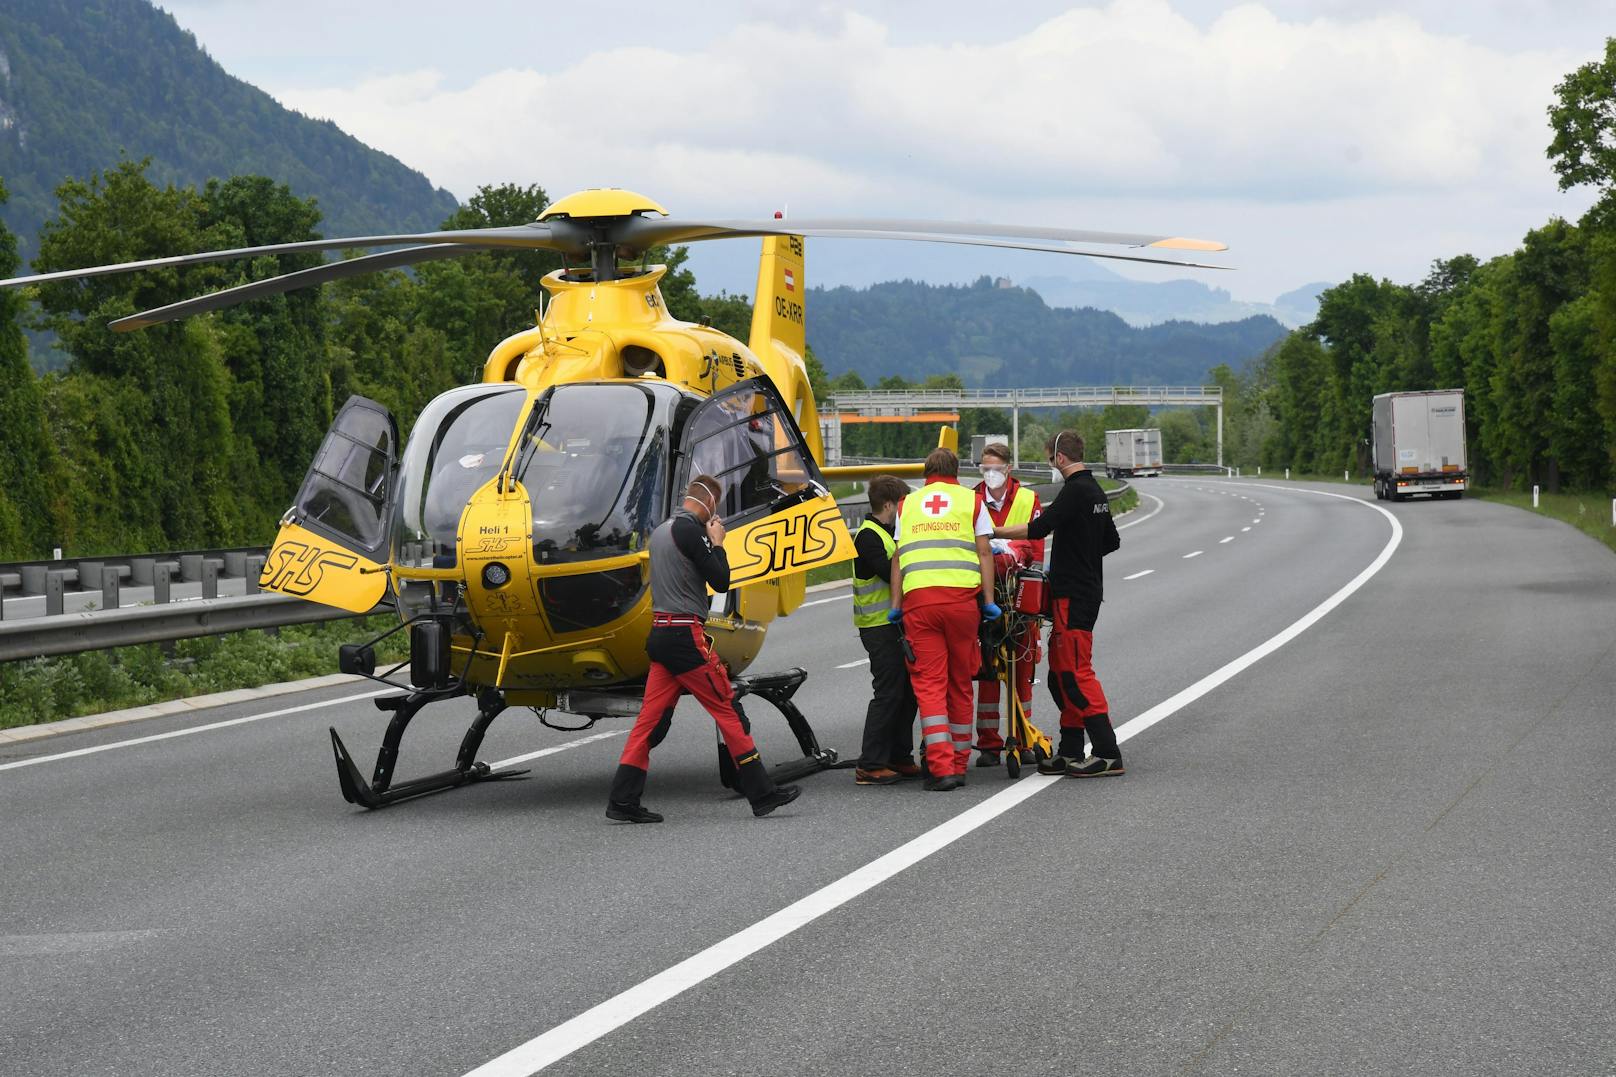 Dabei erlitt der Beifahrer, ein 29-jähriger Bosnier, tödliche Verletzungen. Der Lenker wurde mit Verletzungen unbestimmten Grades von der Rettung in das Krankenhaus Kufstein eingeliefert.